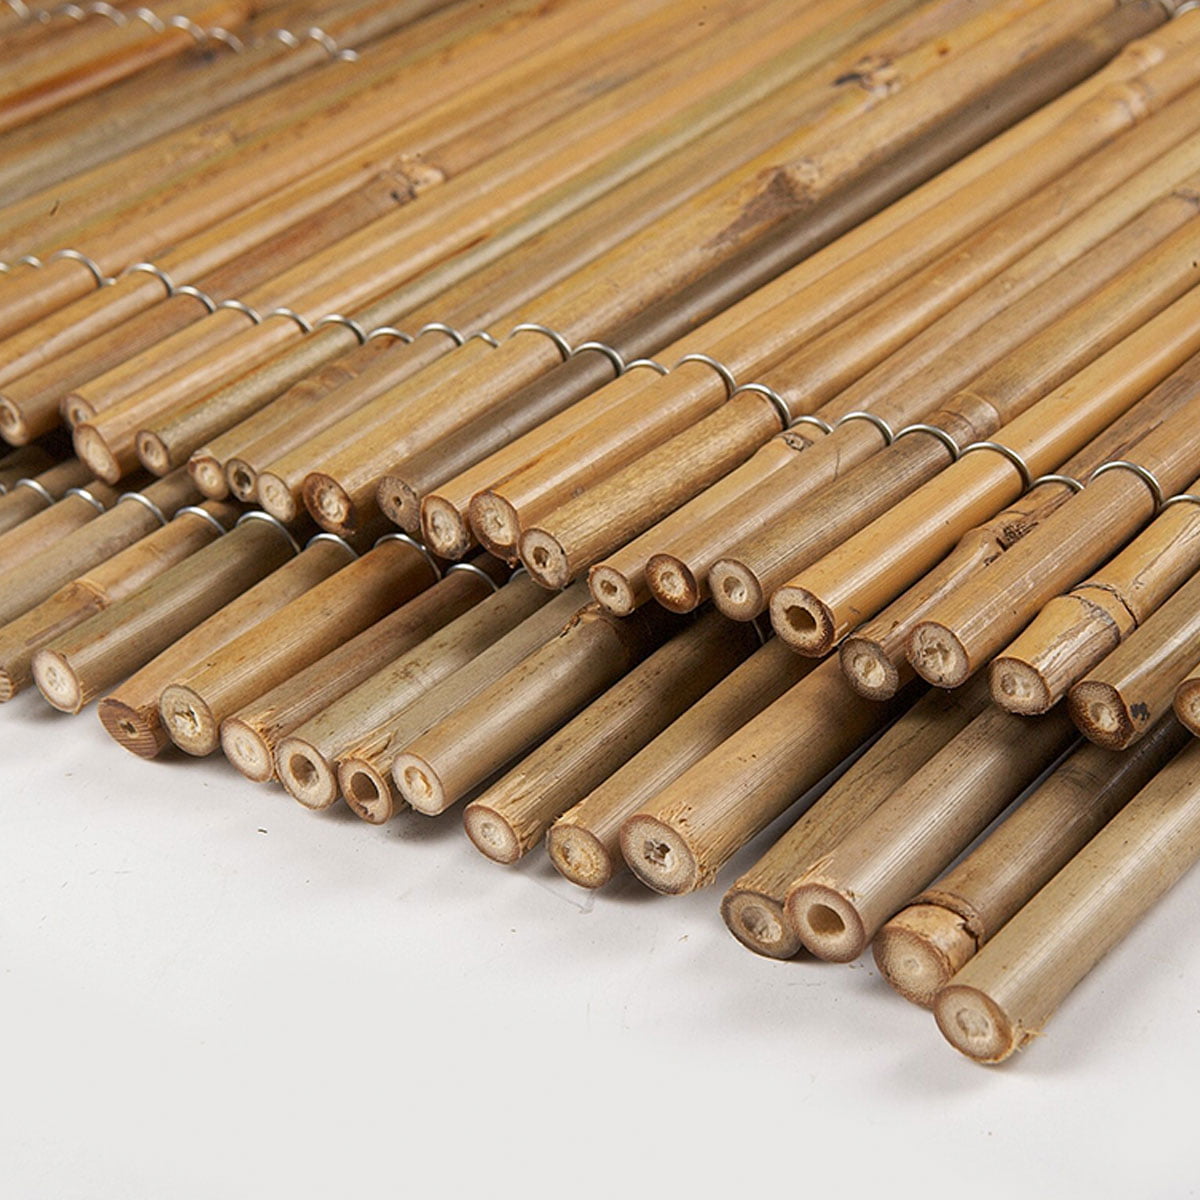 Levegg av bambus er laget av tynne, lange og fleksible bambusrør som er bundet sammen til ulike høyder.